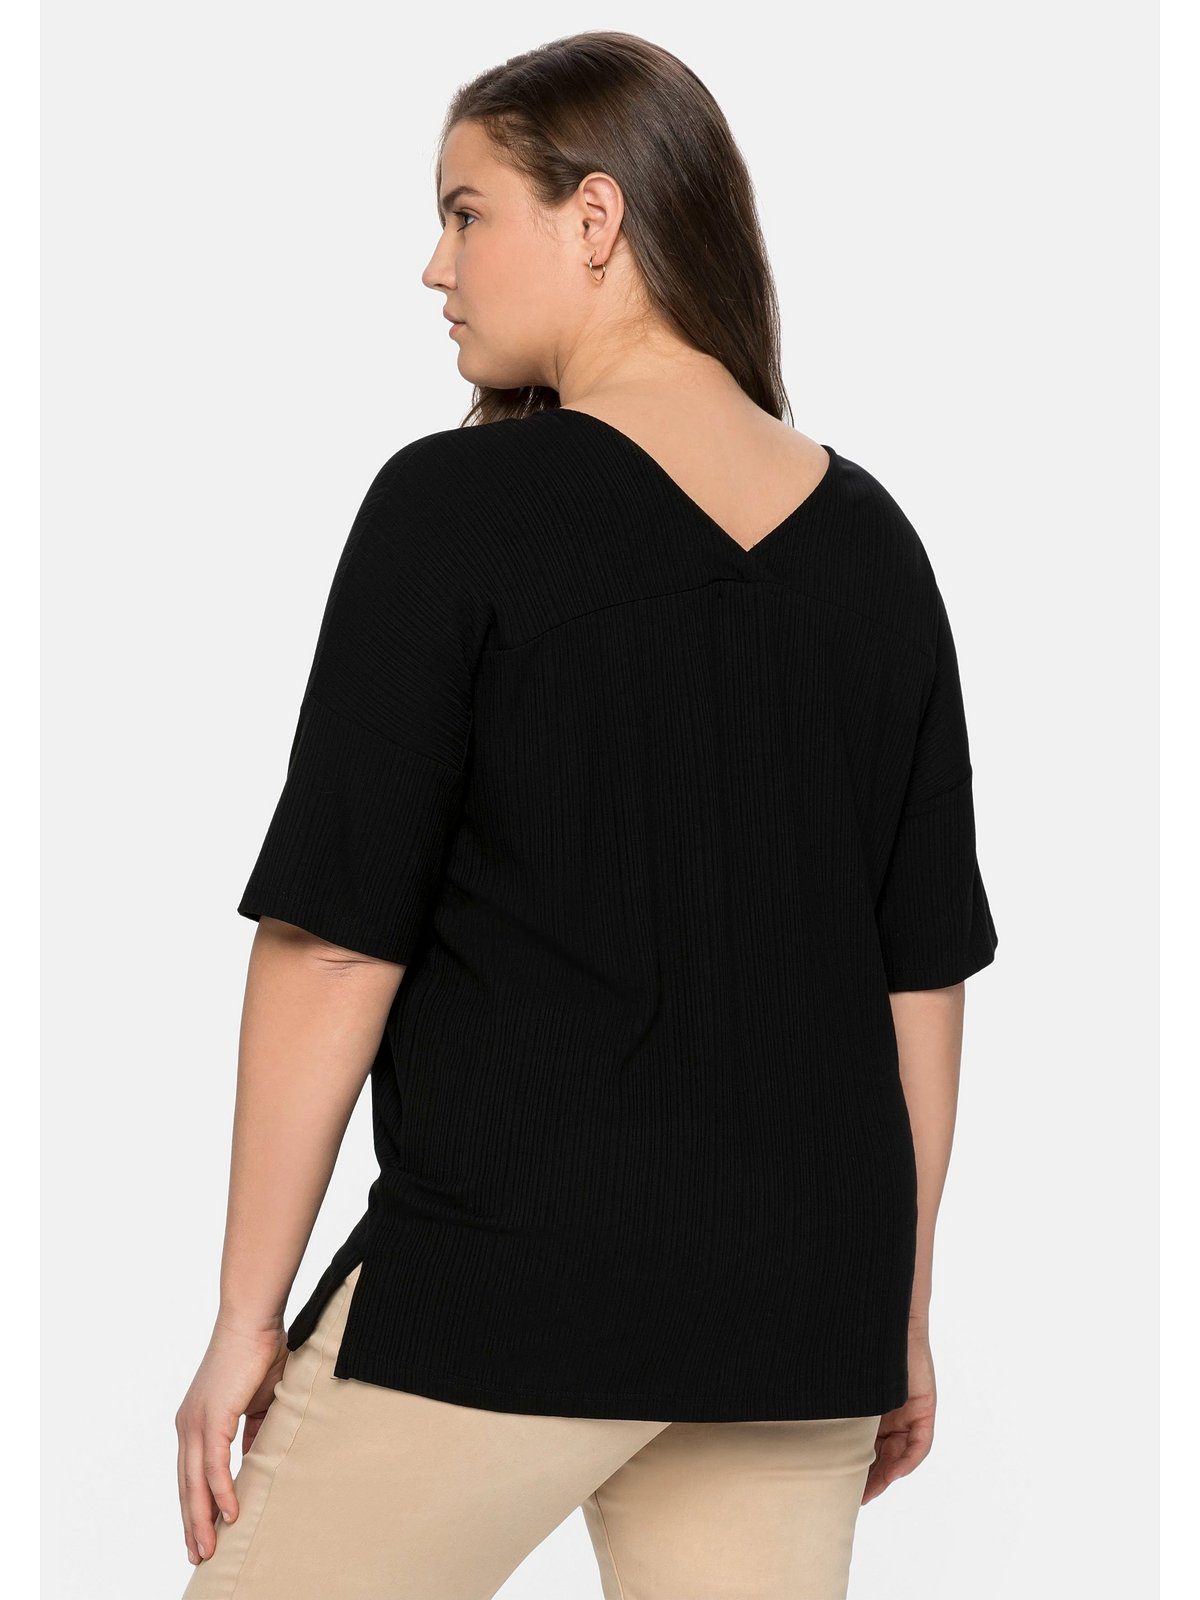 Sheego T-Shirt Große Größen dezenten schwarz Streifenlook im